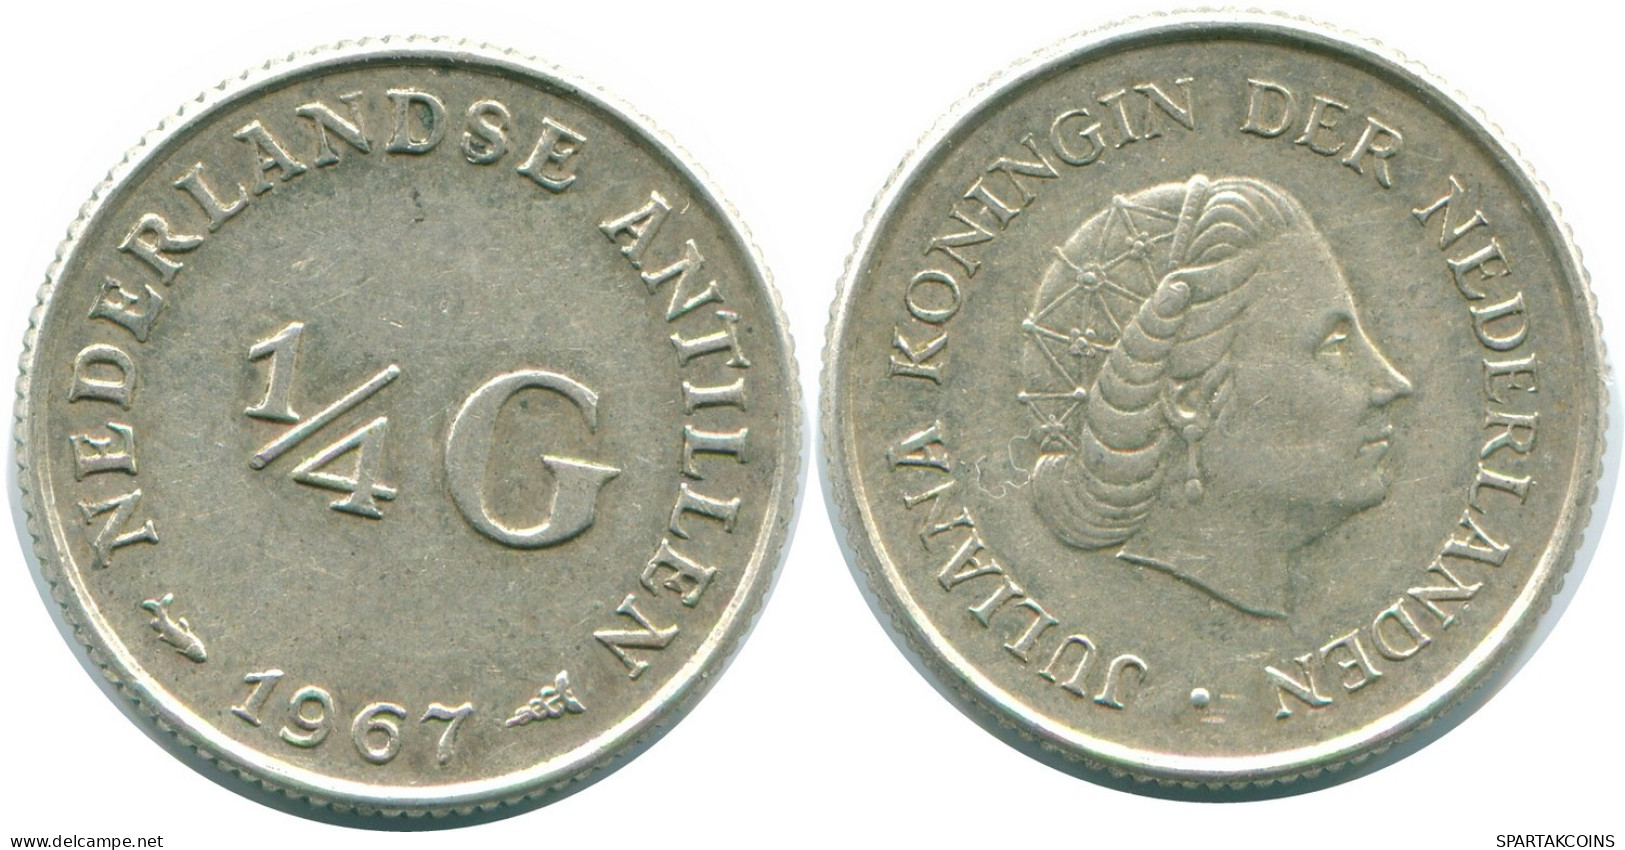 1/4 GULDEN 1967 NIEDERLÄNDISCHE ANTILLEN SILBER Koloniale Münze #NL11480.4.D.A - Niederländische Antillen